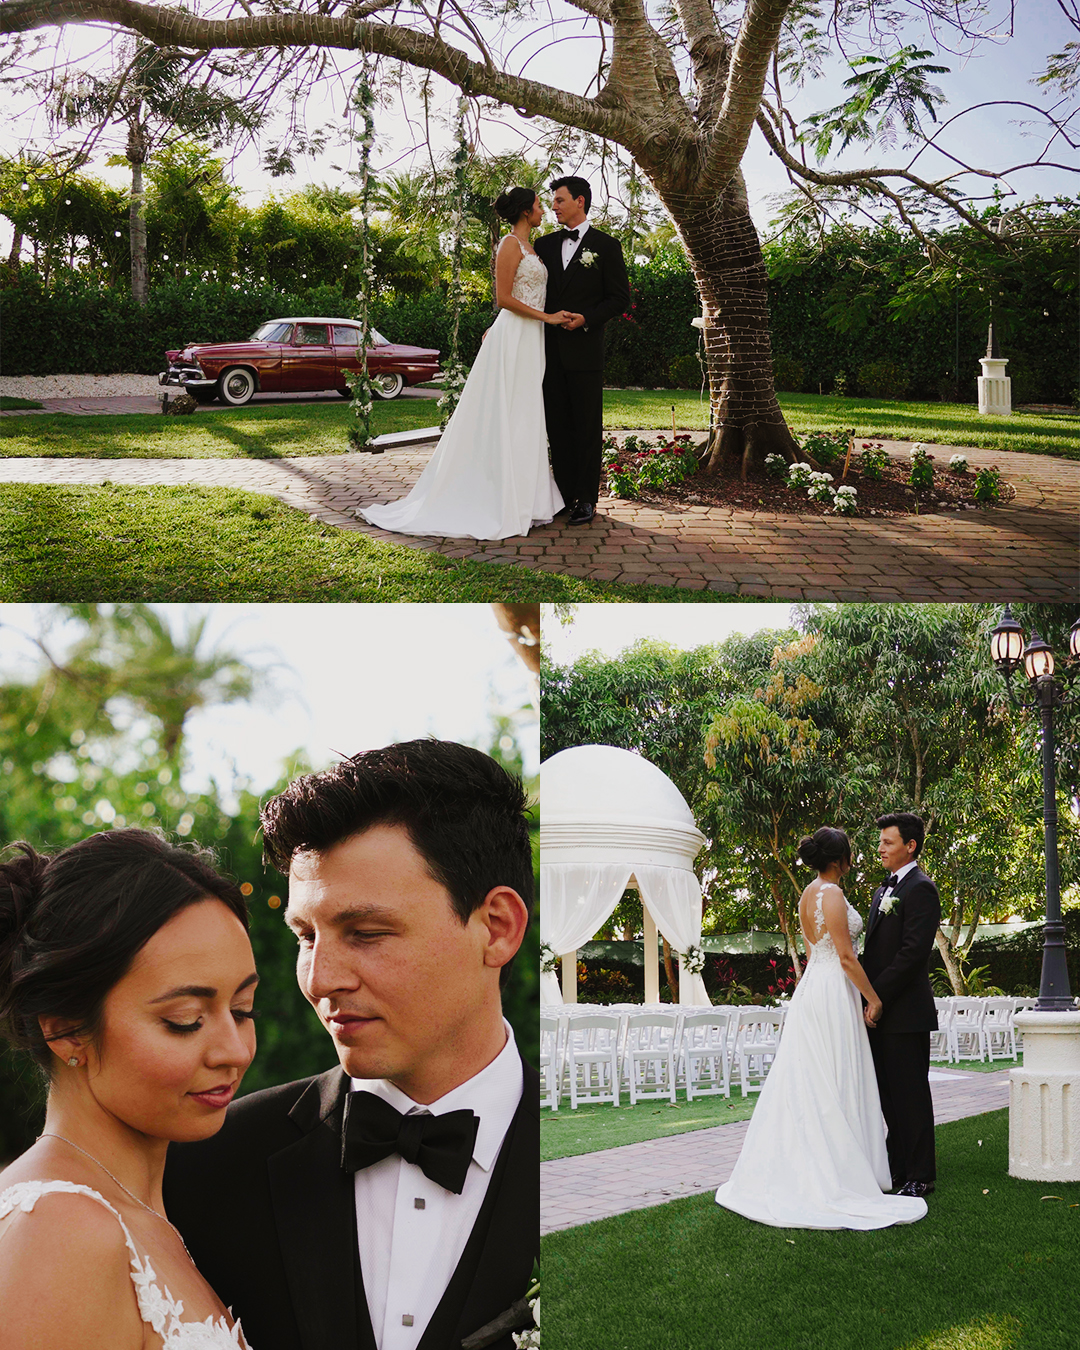 Joanna and Eric, wedding at Wedding at Villa Toscana Miami, FL image 1